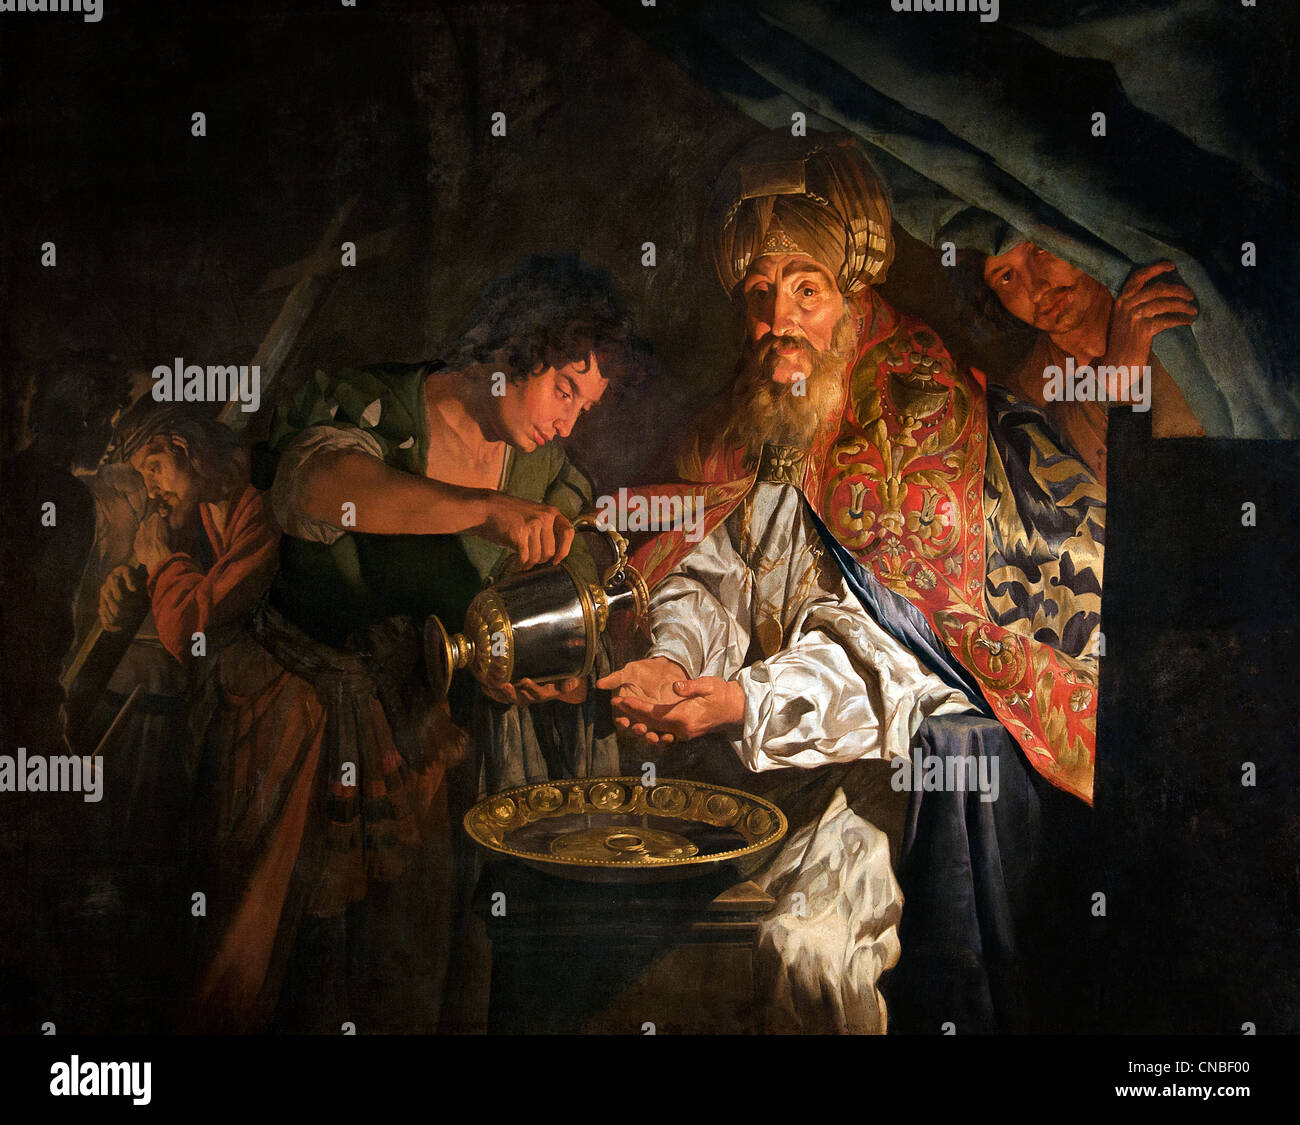 Pilate se laver les mains après la condamnation à mort du Christ Mathias STOM 1600 - 1650 Pays-Bas du sud flamand néerlandais Banque D'Images